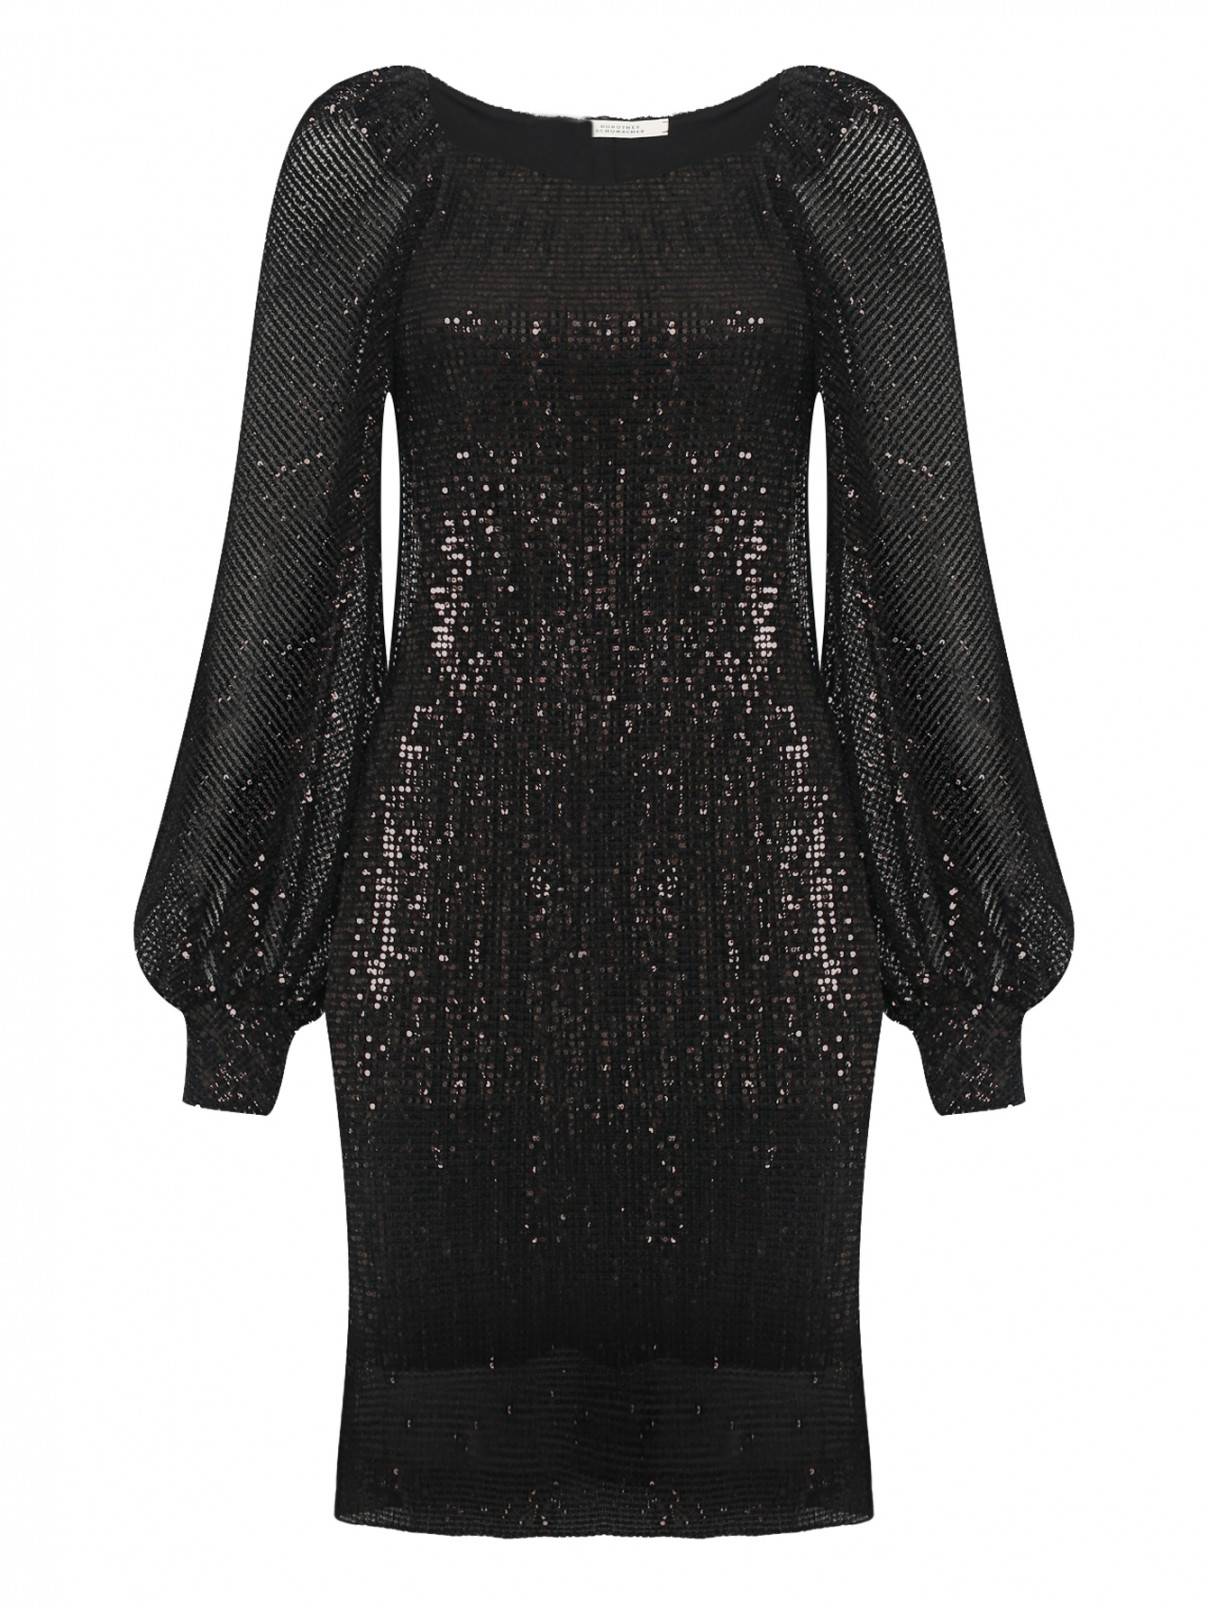 Платье декорированное пайетками Dorothee Schumacher  –  Общий вид  – Цвет:  Черный